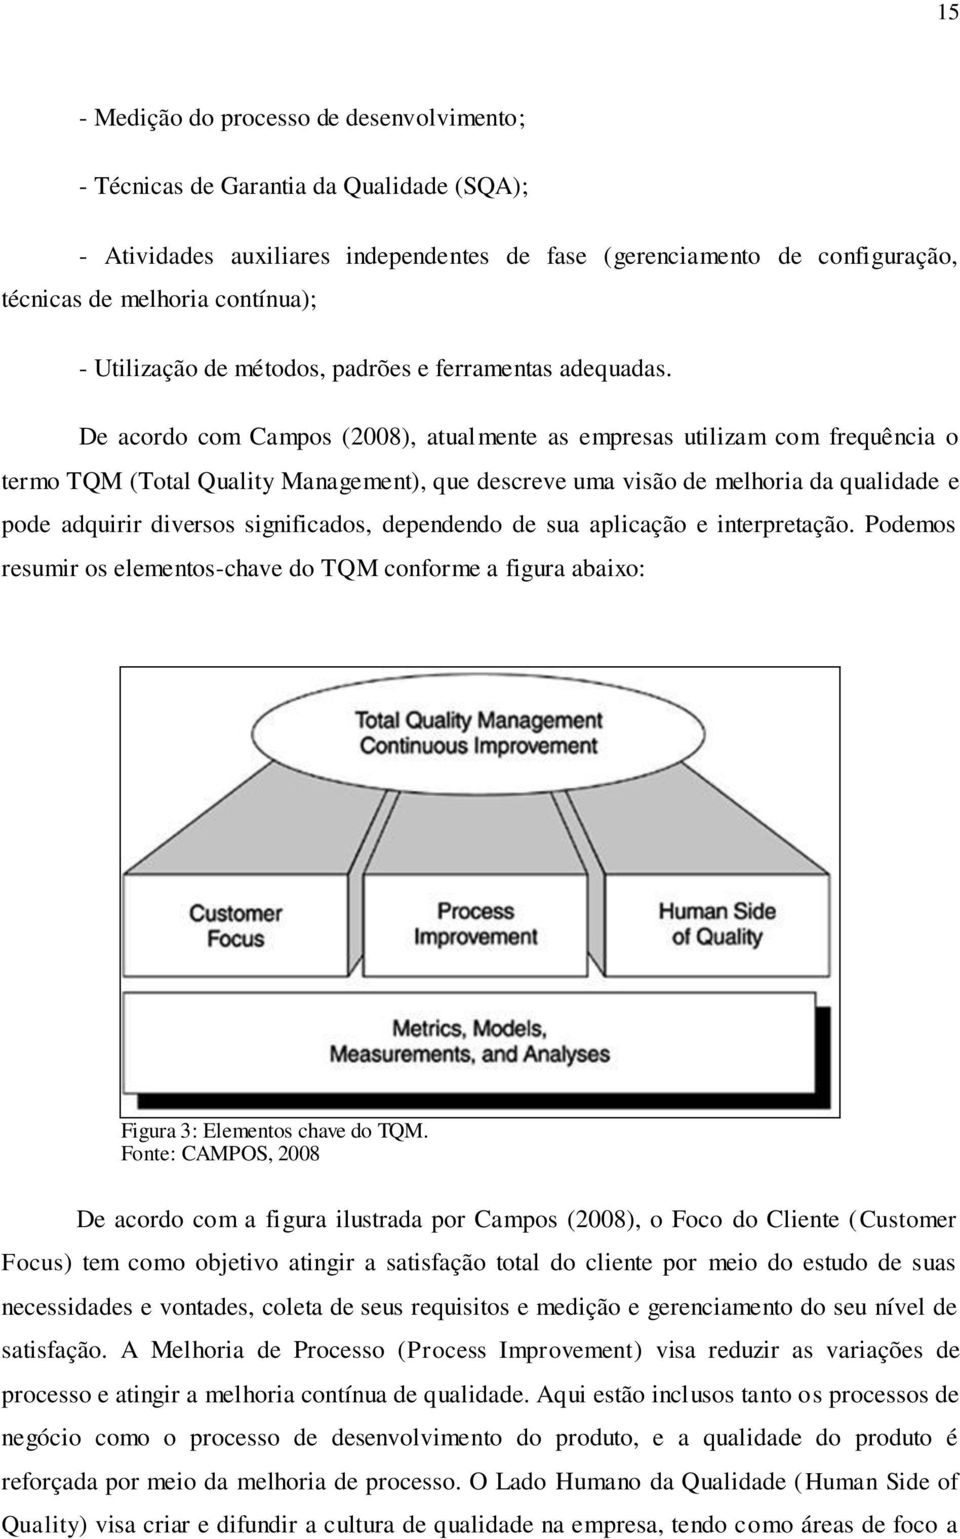 De acordo com Campos (2008), atualmente as empresas utilizam com frequência o termo TQM (Total Quality Management), que descreve uma visão de melhoria da qualidade e pode adquirir diversos